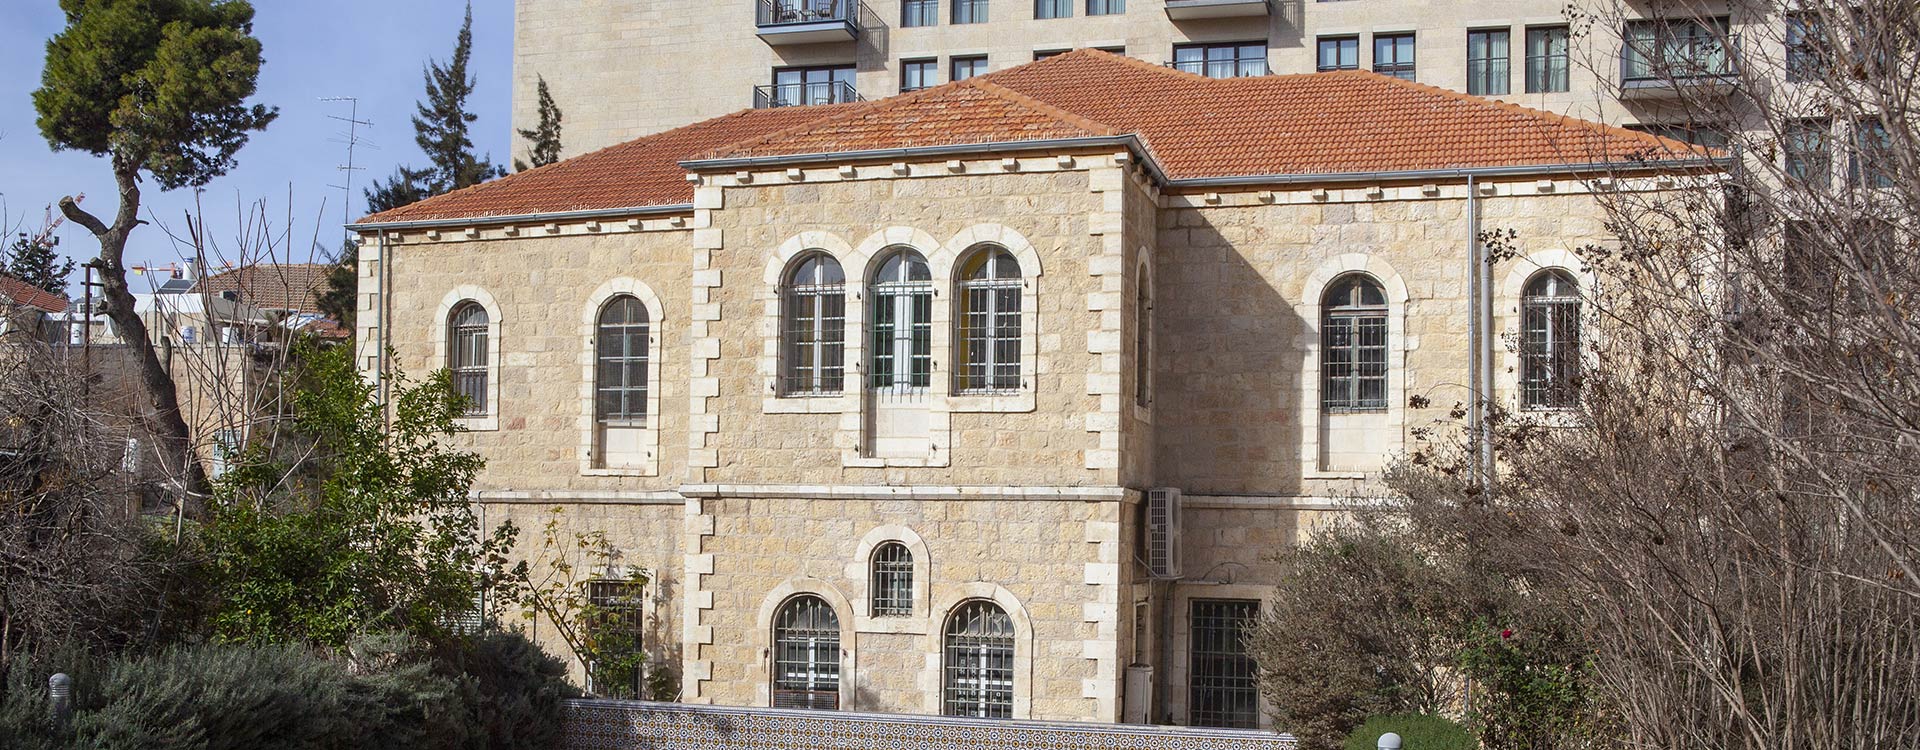 שימור והרחבת מרכז מוזיקה, בית לורנצ'ו, ירושלים